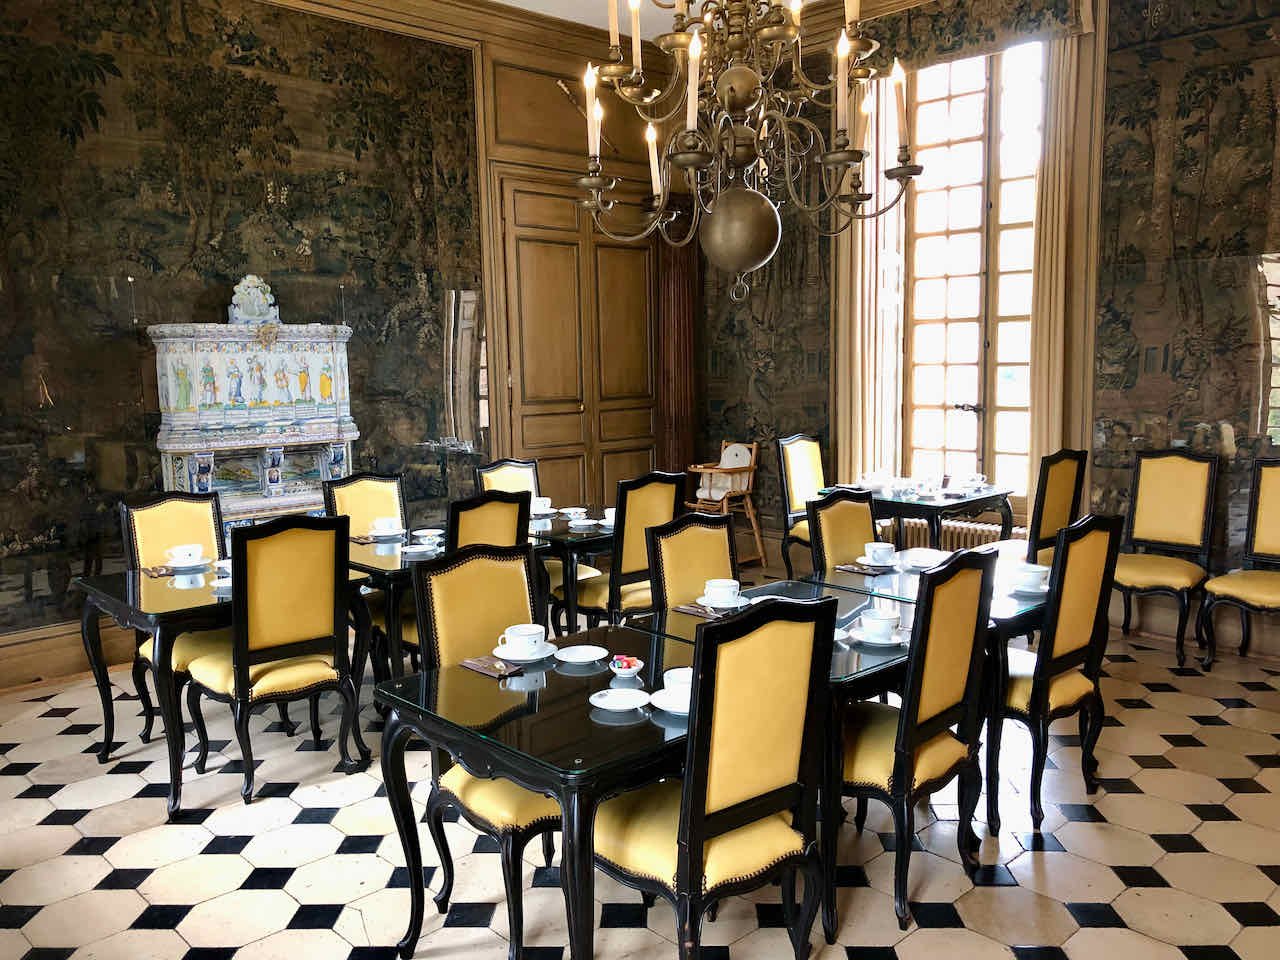 Chateau de Bourron breakfast room